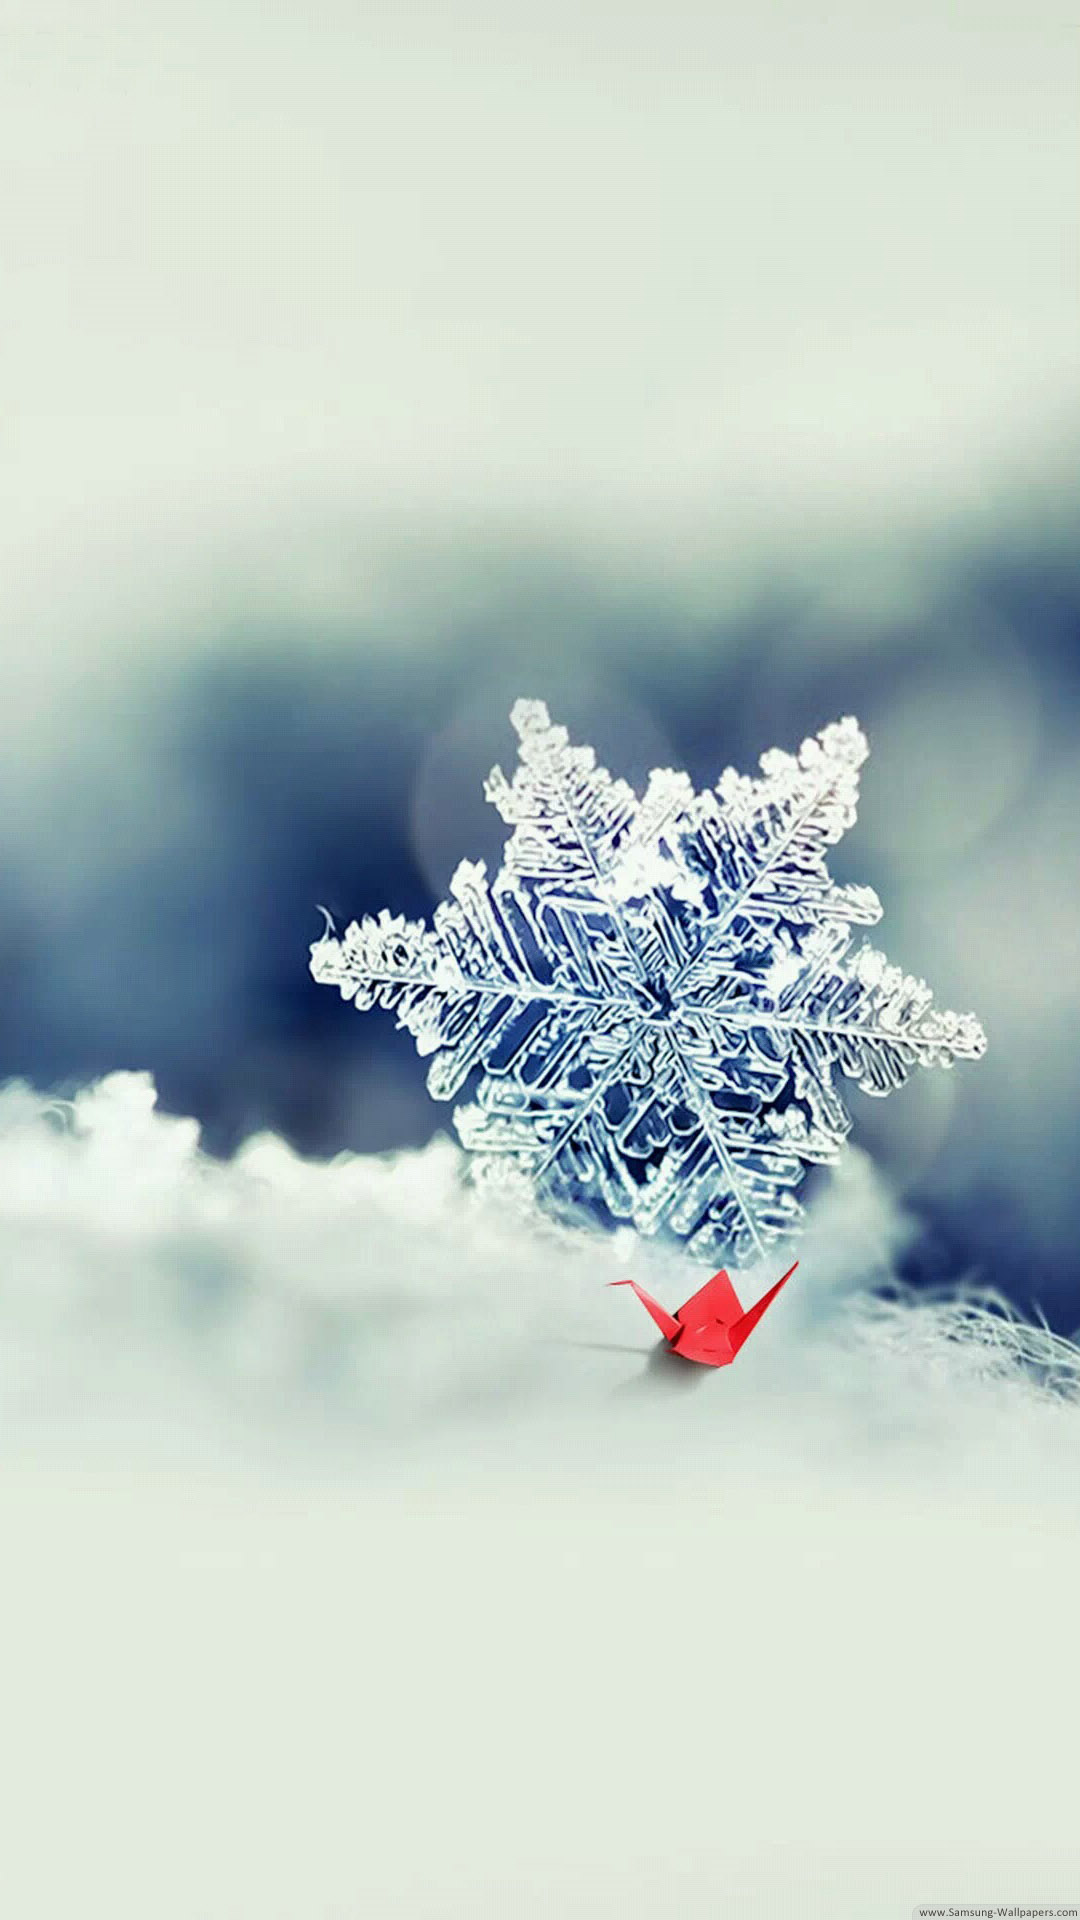 冬っぽいスマホ壁紙 美しい雪の結晶 Iphone Wallpapers